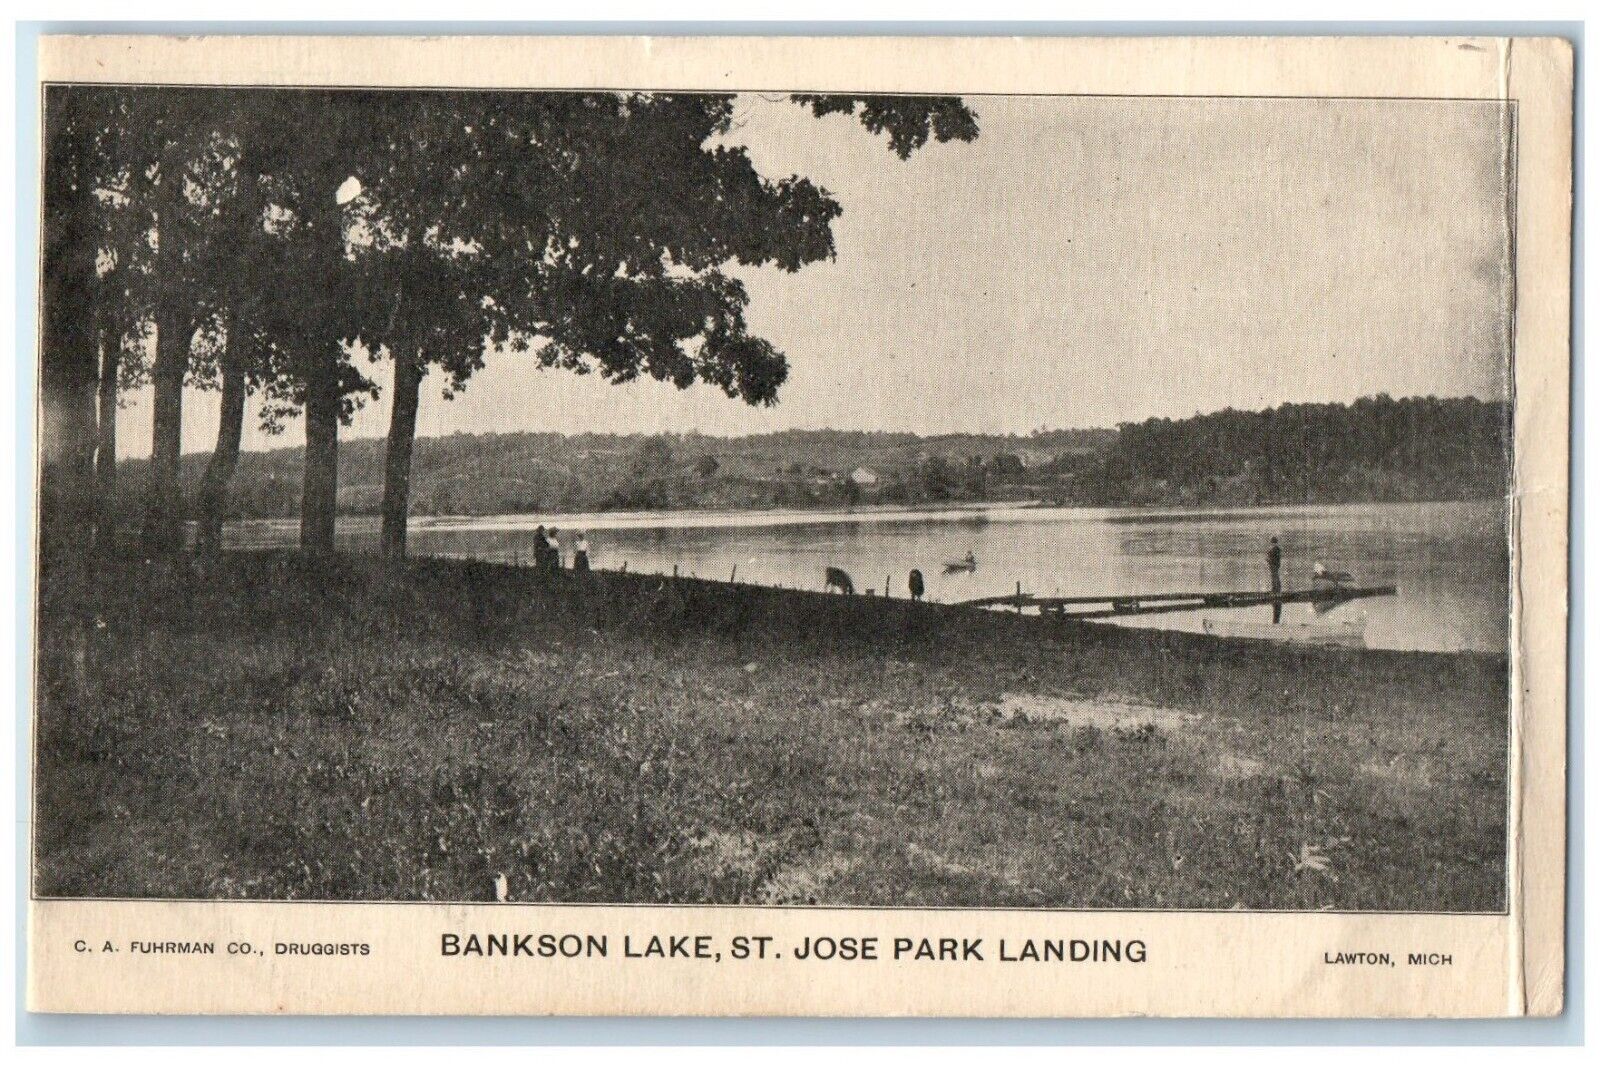 1909 Bankson Lake St. Jose Park Landing Lawton Michigan Vintage Antique Postcard